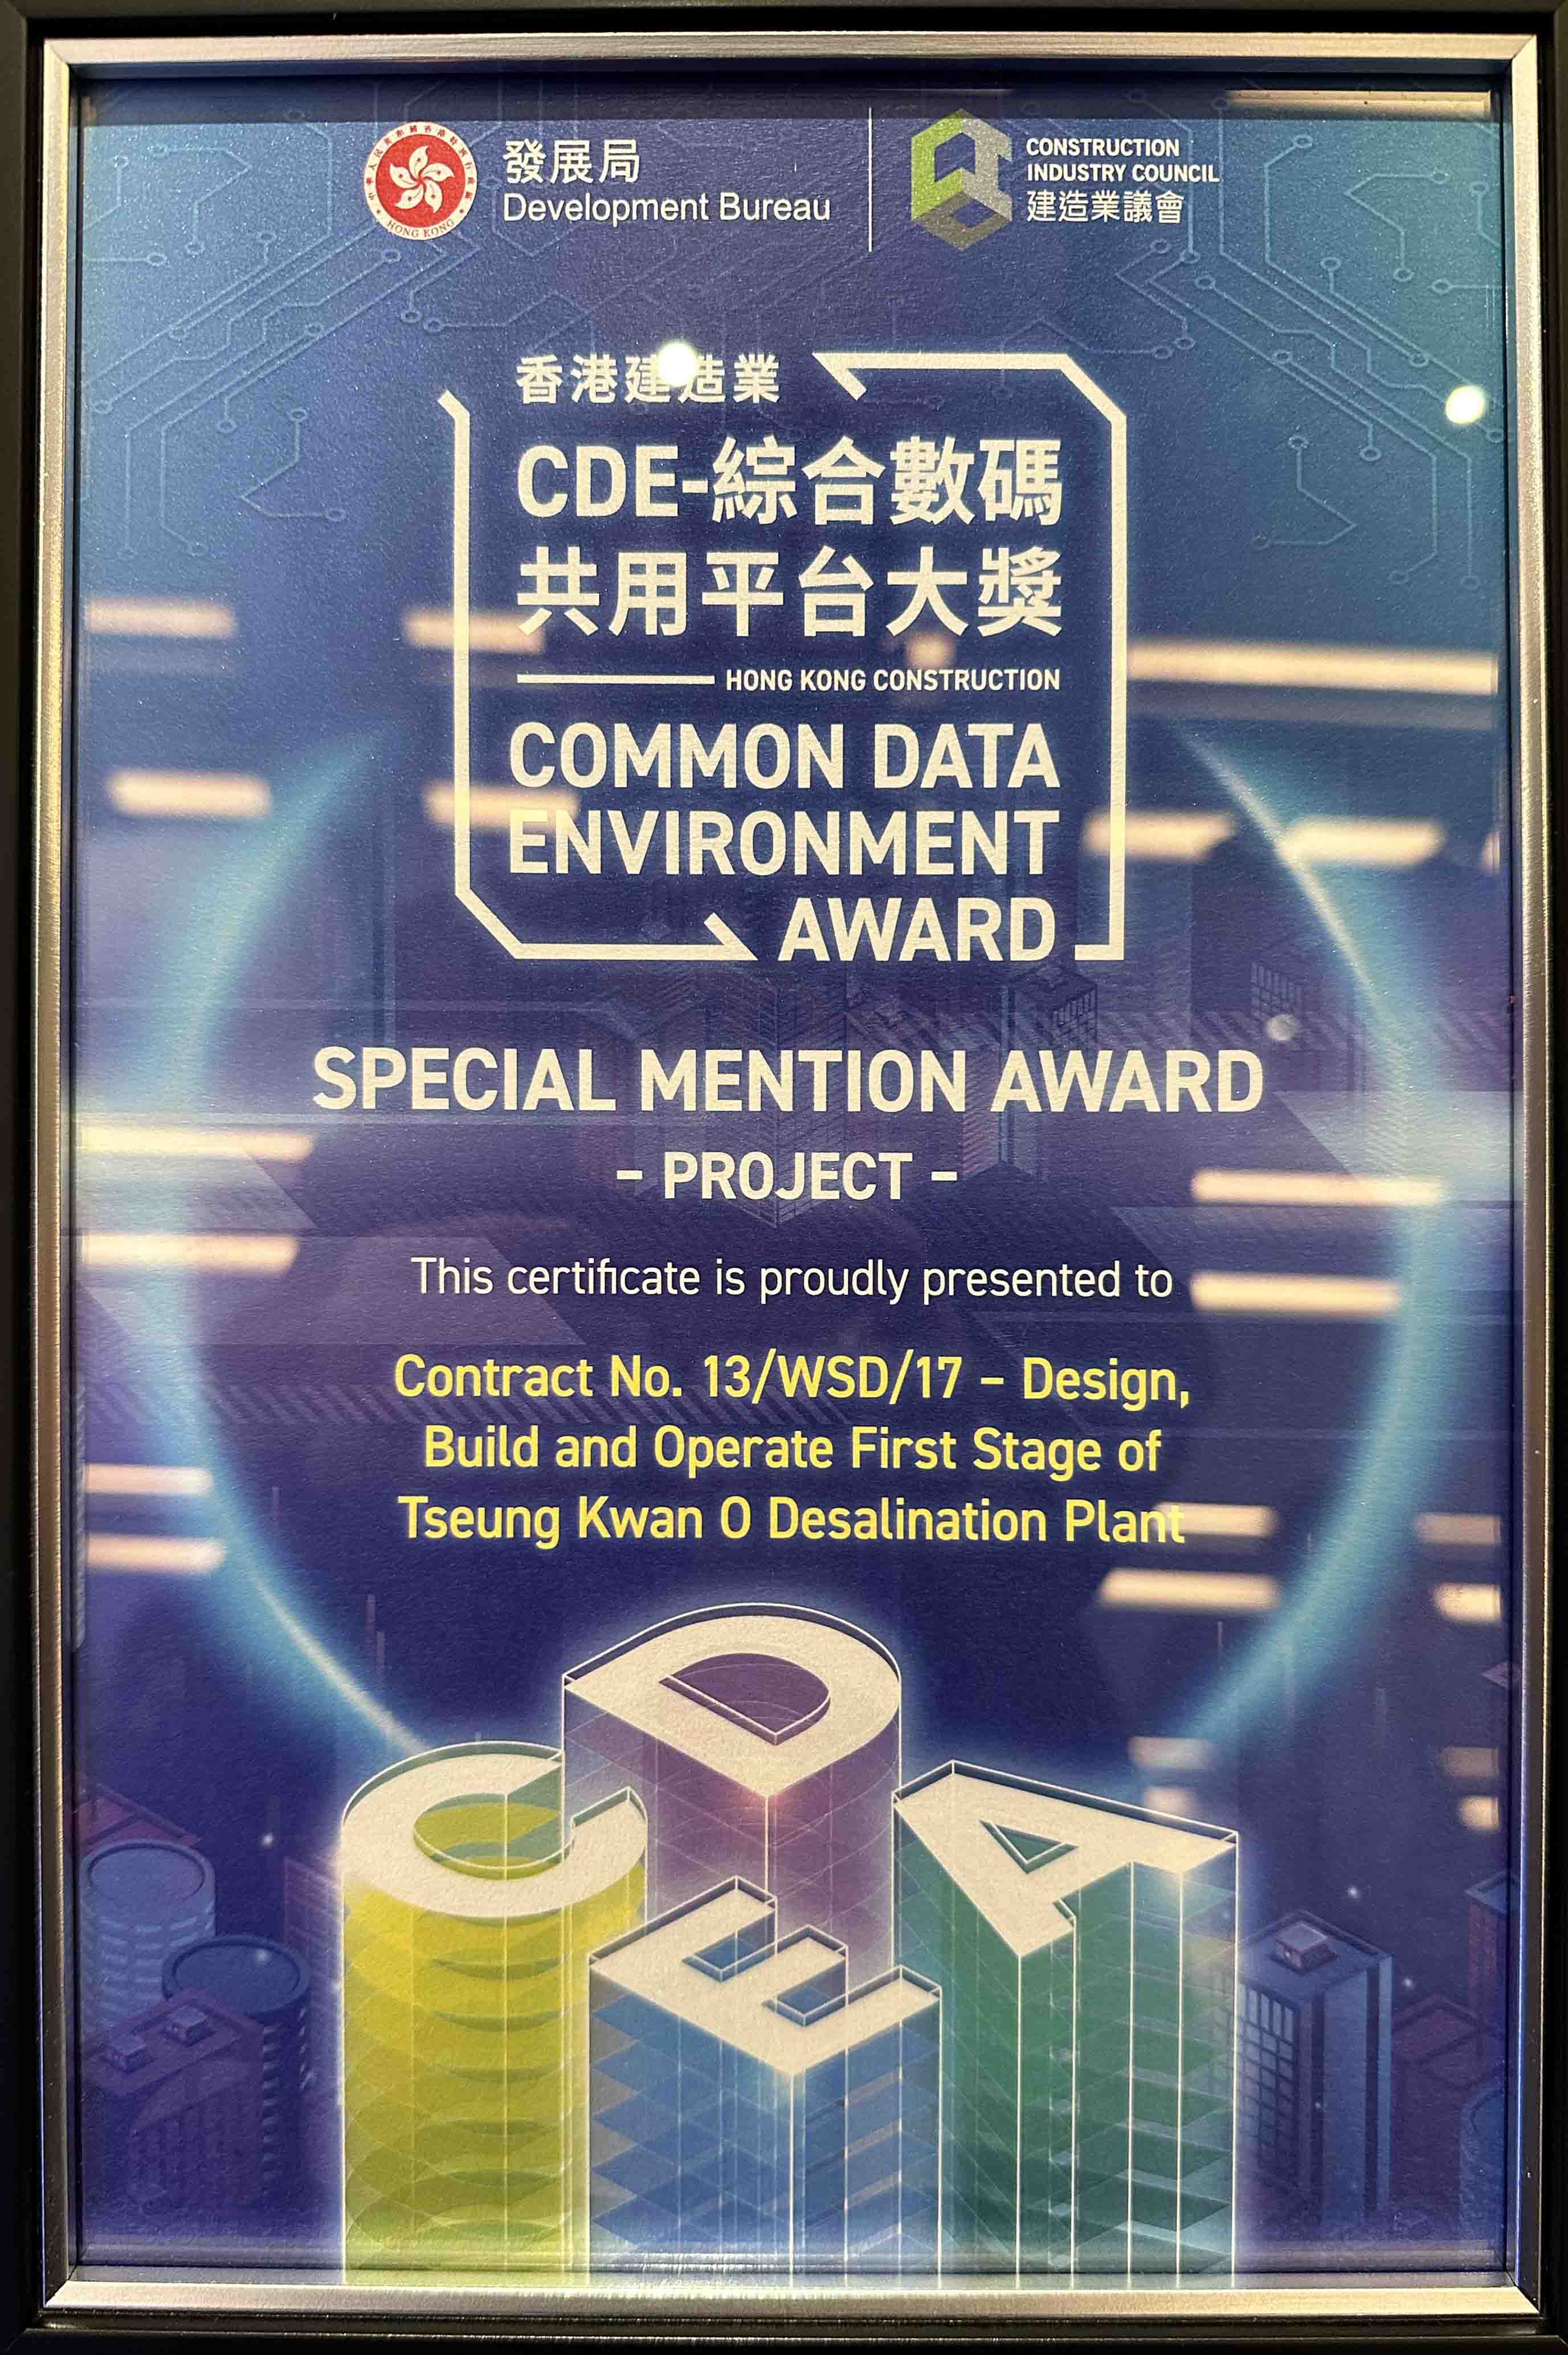 香港建造業CDE - 綜合數碼共用平台大獎